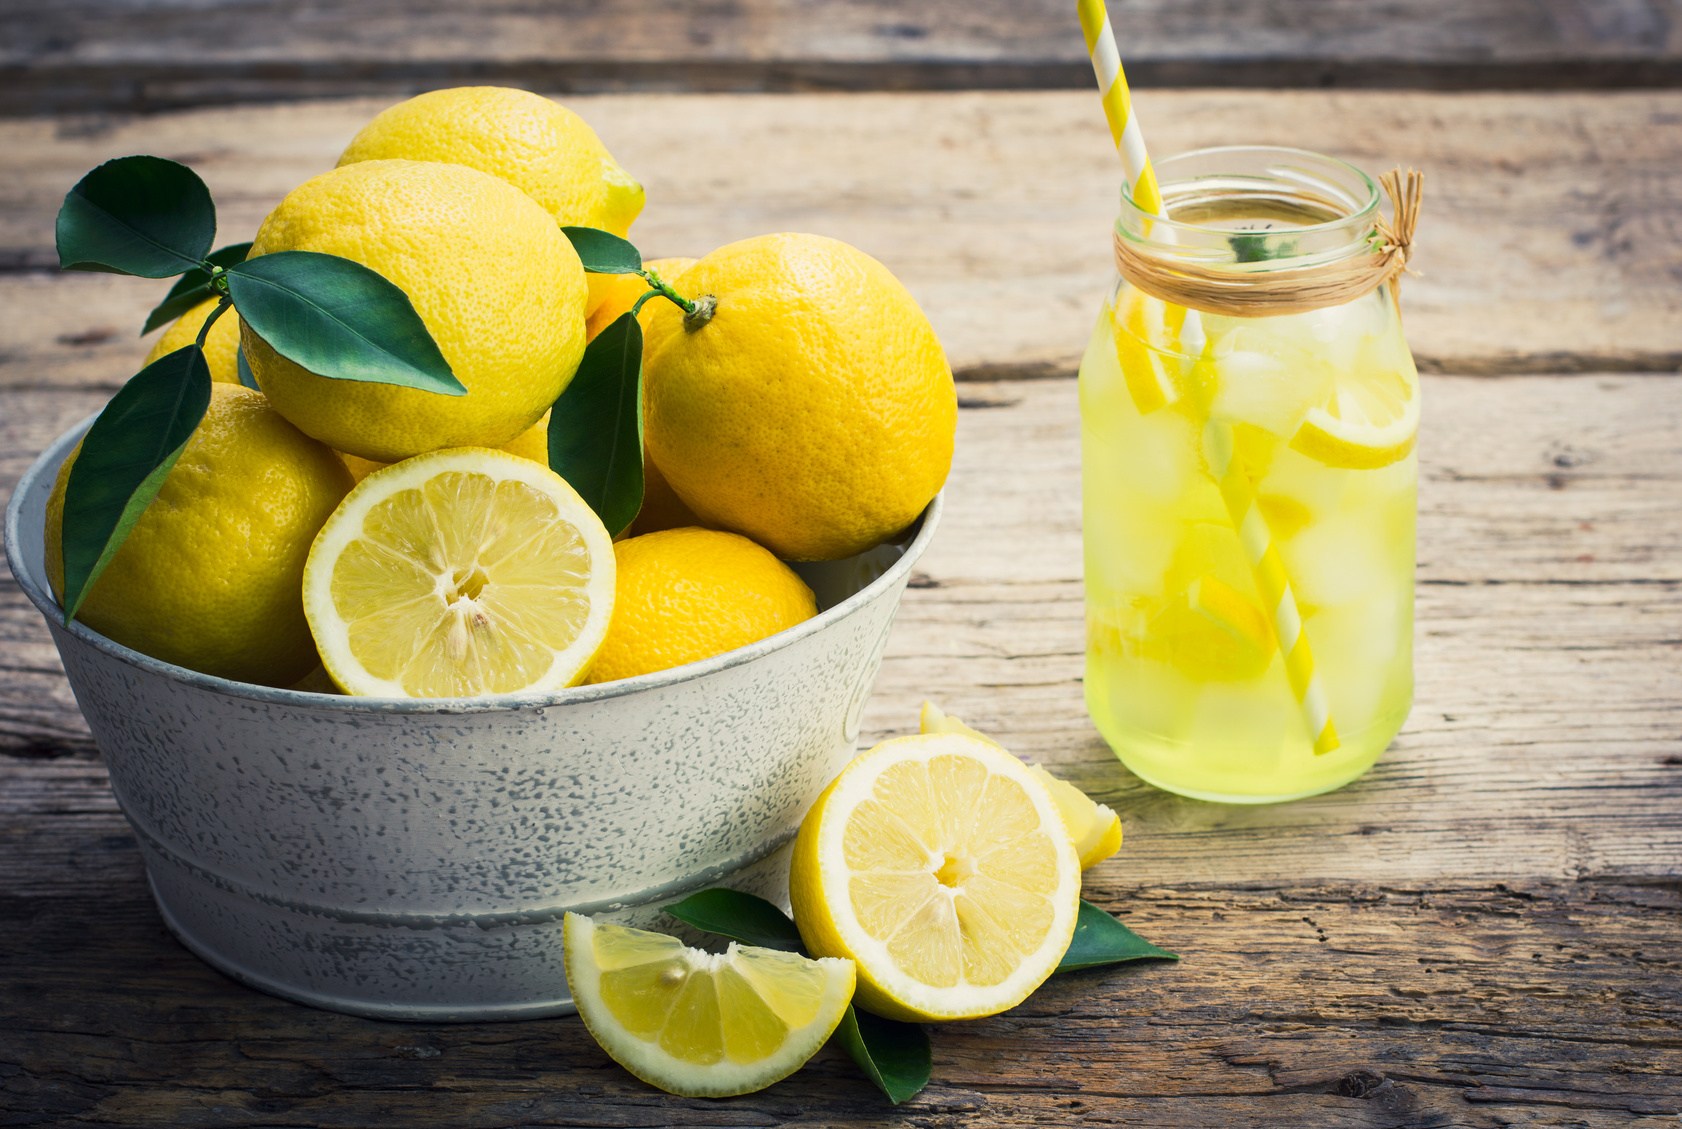 الان – كنز في بيتك بترميه كل يوم اعرف فوائد قشر الليمون لصحتك وصحة أولادك – البوكس نيوز